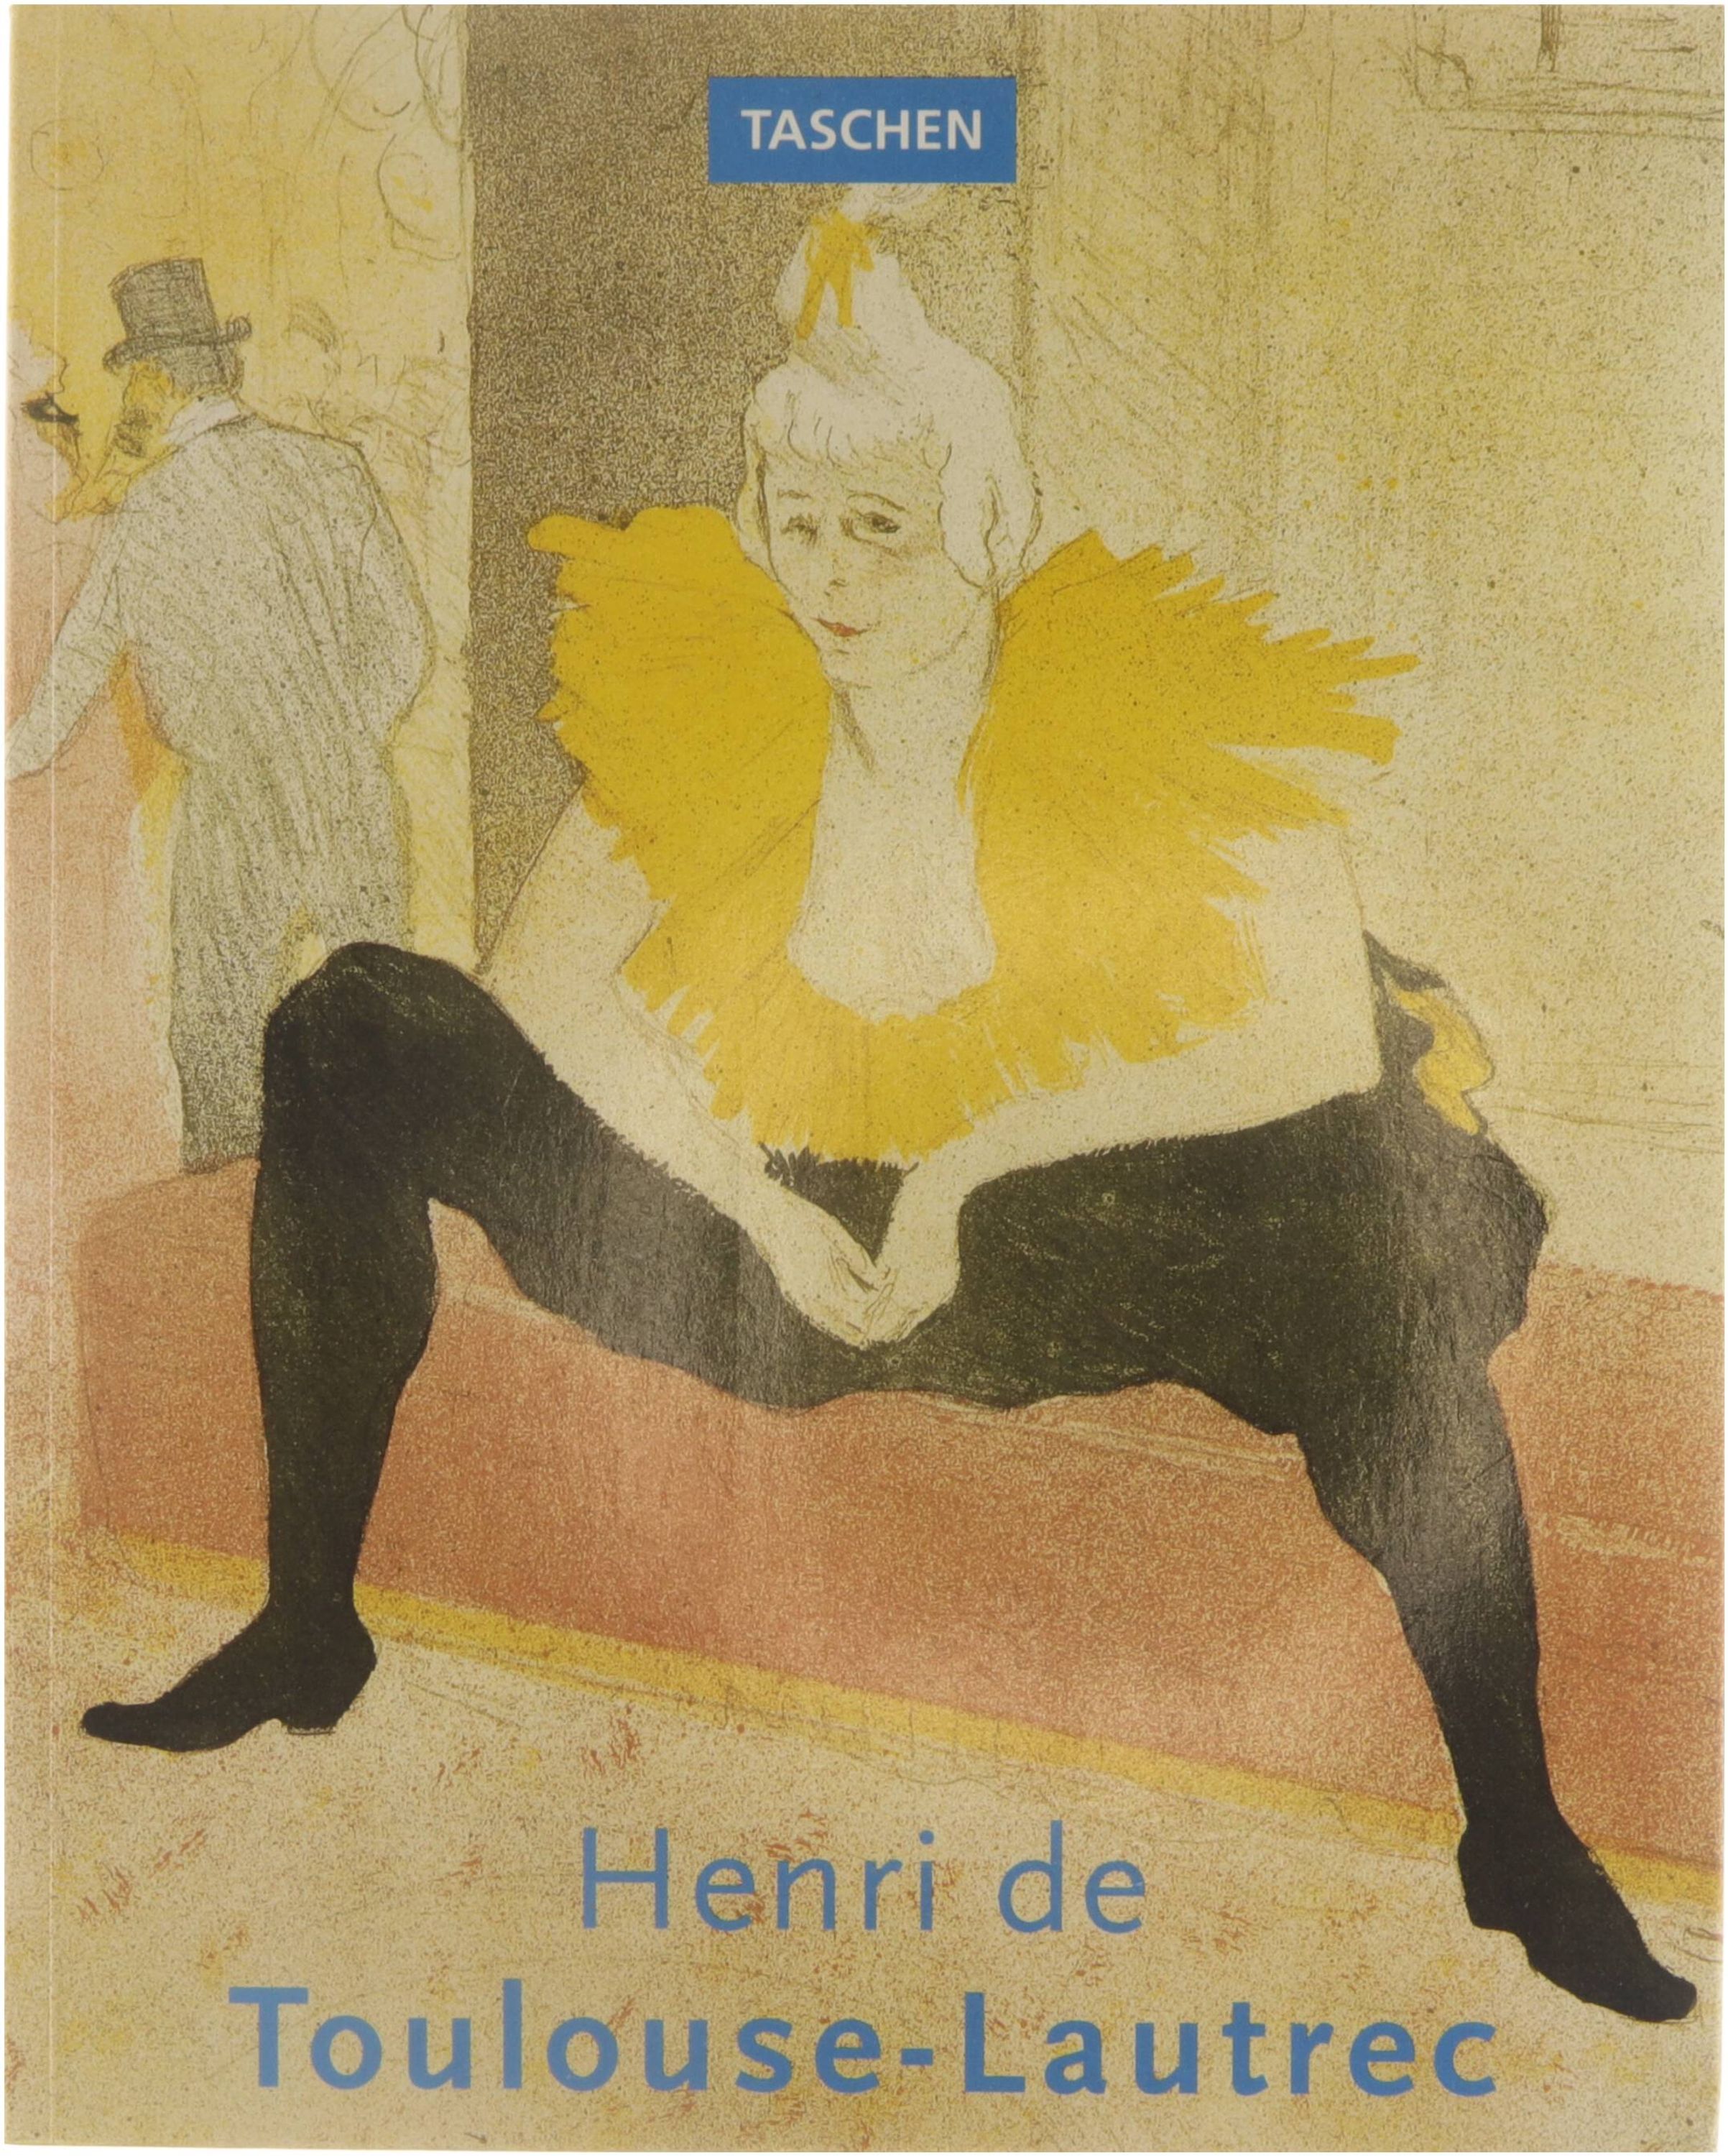 Henri de Toulouse-Lautrec 1864-1901 - Gilles, Néret Ingo F., Walther, Wil, Boesten, Elke, Doelman